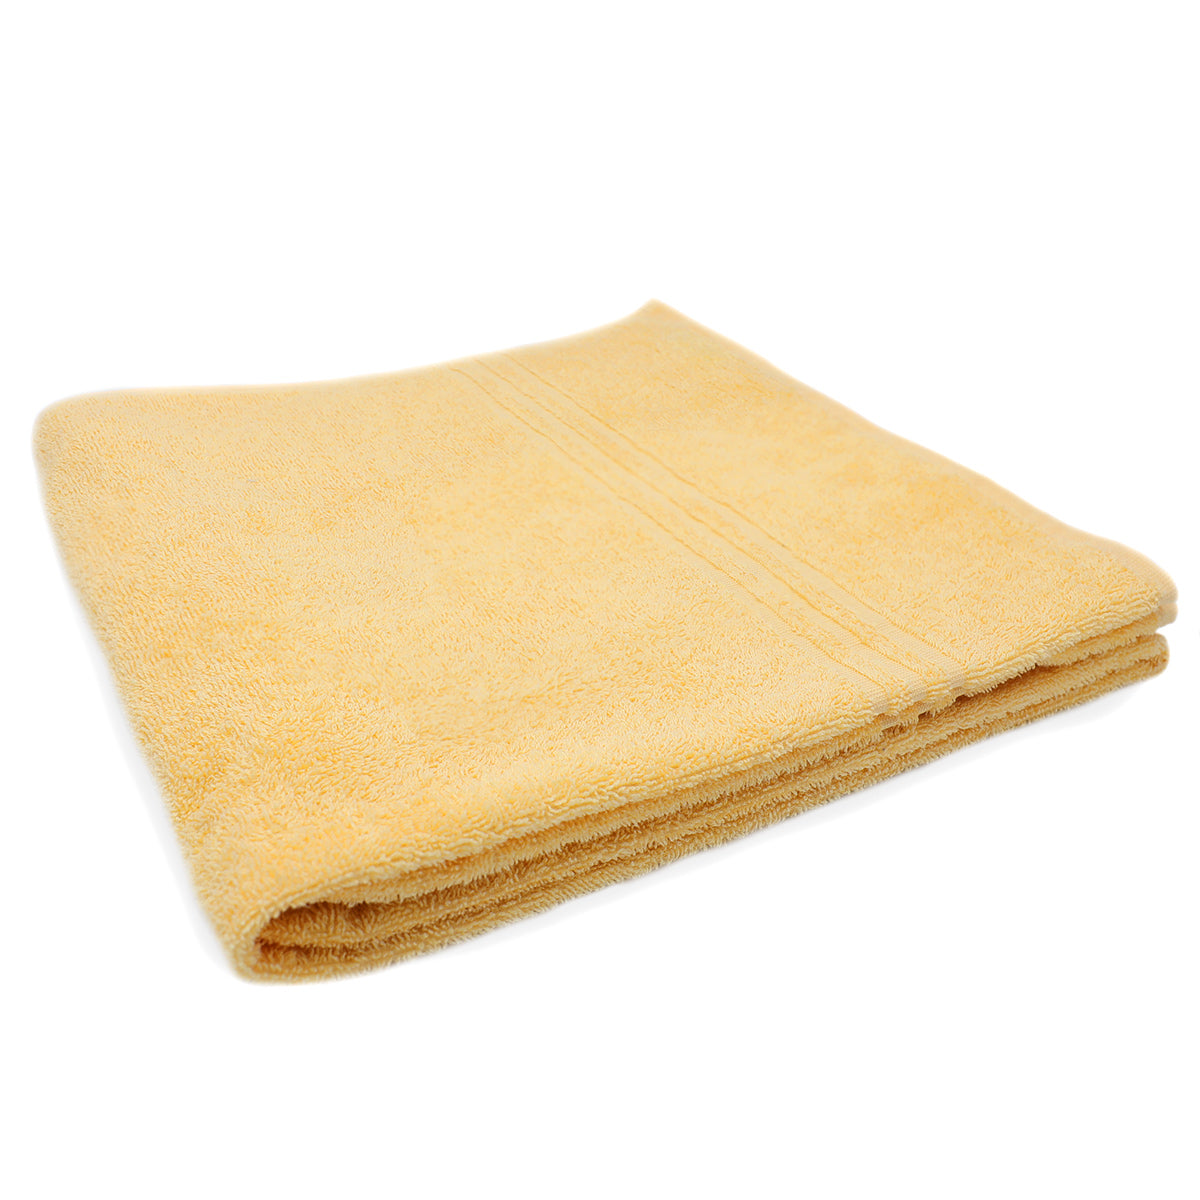 (30 stk.) Grønland badehåndklæde - 70 x 140 cm - gul